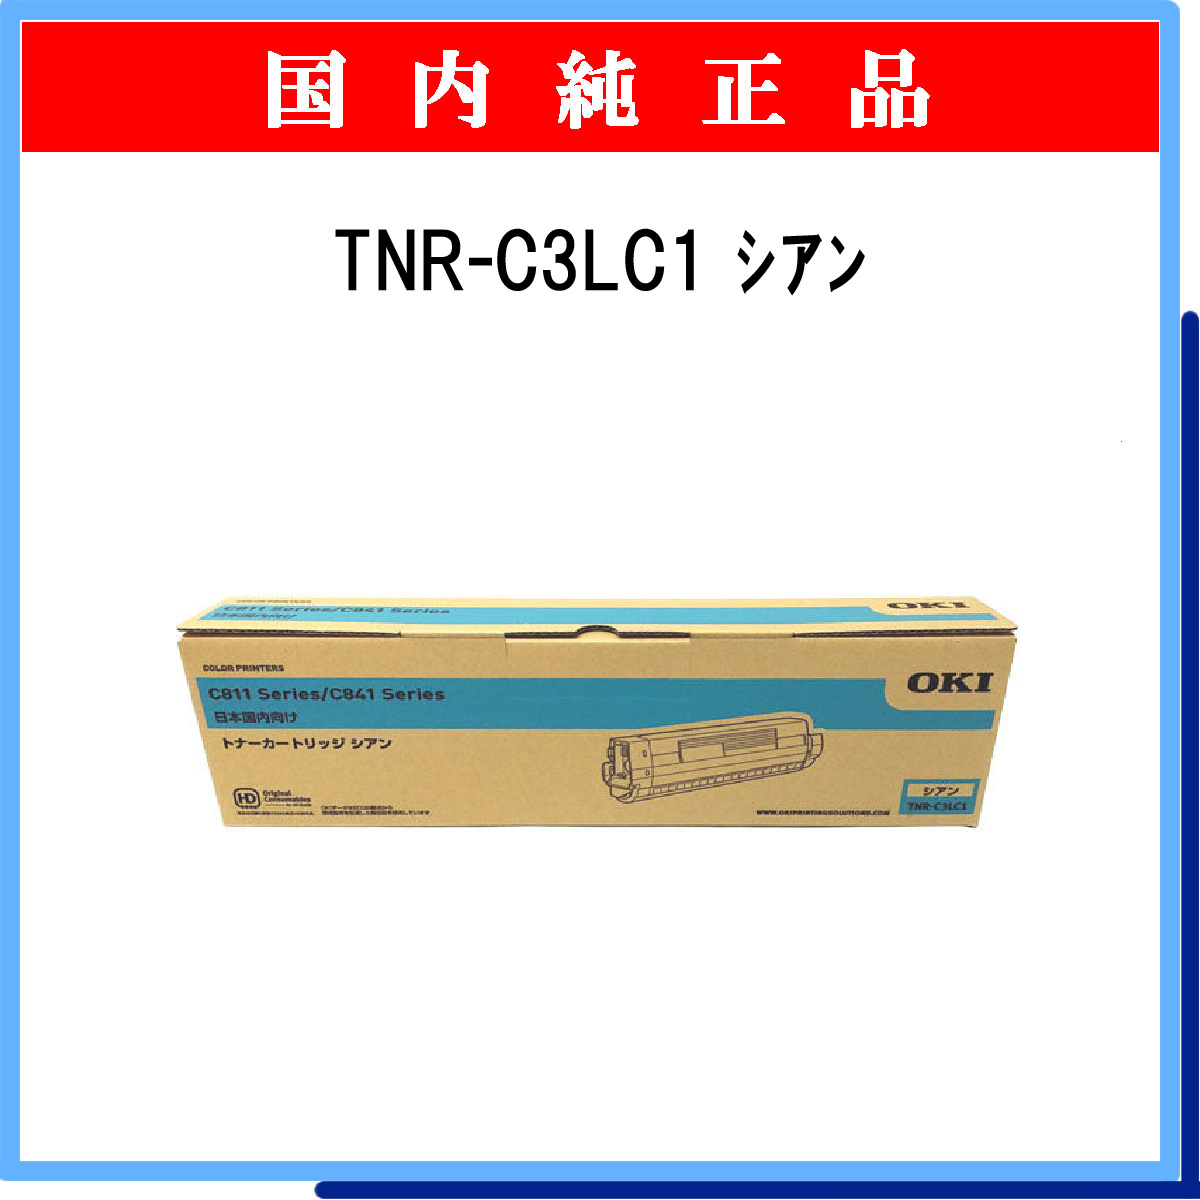 TNR-C3LC1 純正